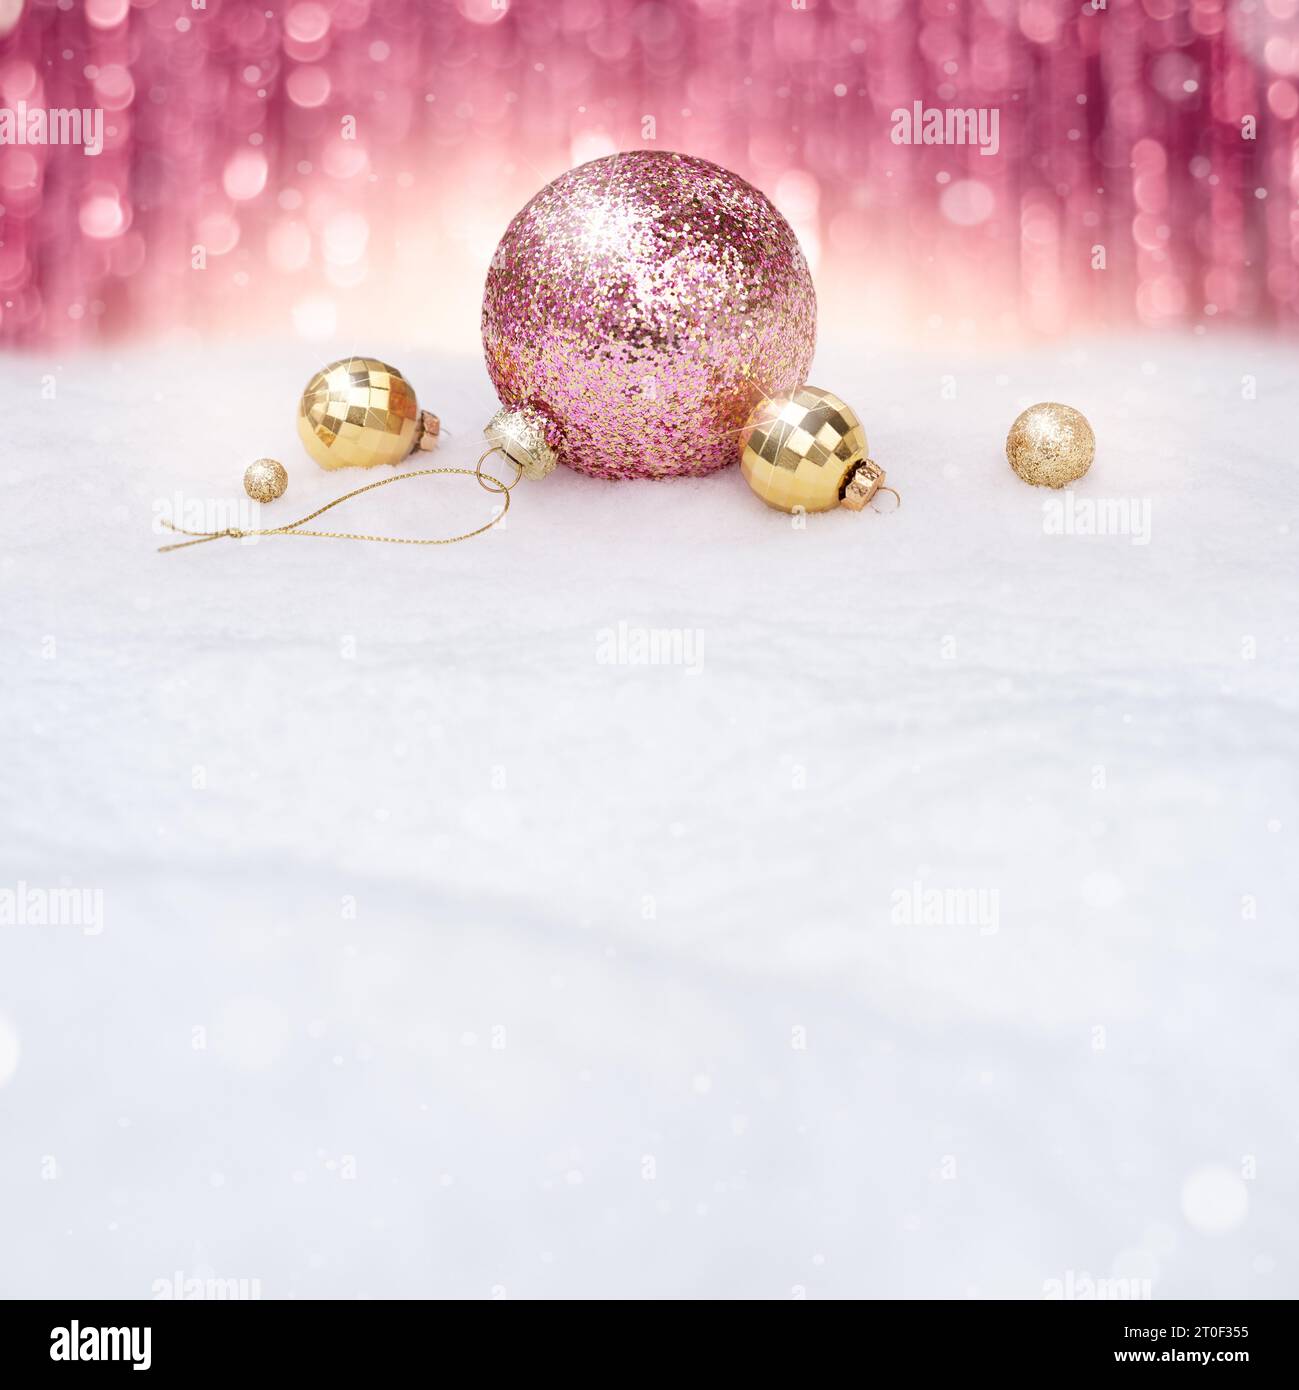 Fond de Noël avec boules roses sur neige Banque D'Images